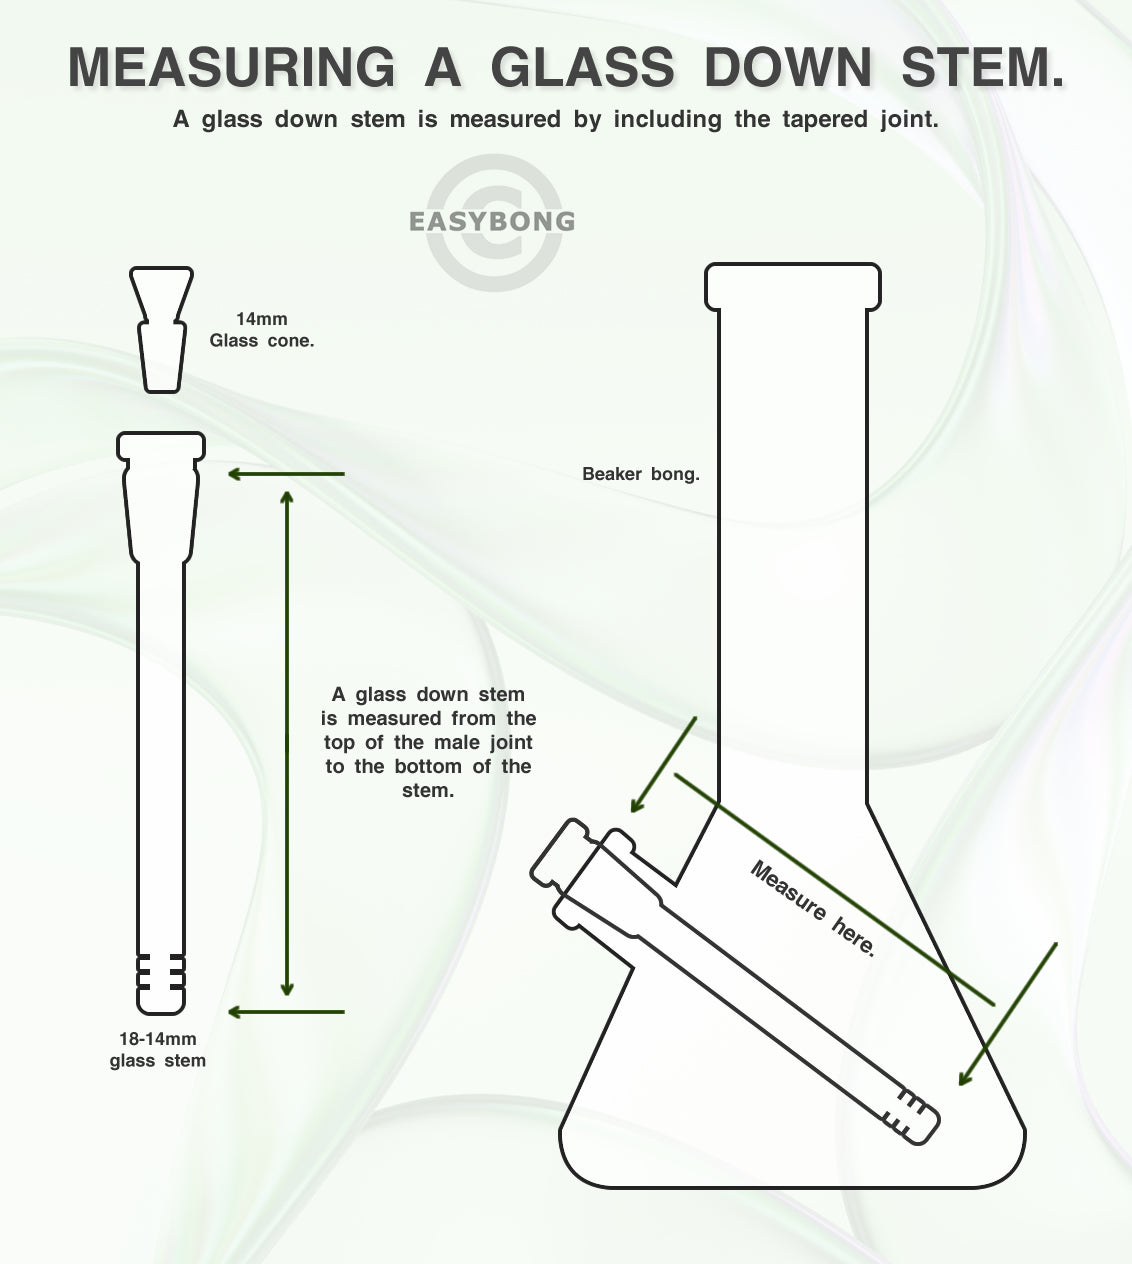 Easy Bong Australia guide to measuring a Downstem for glass bongs.